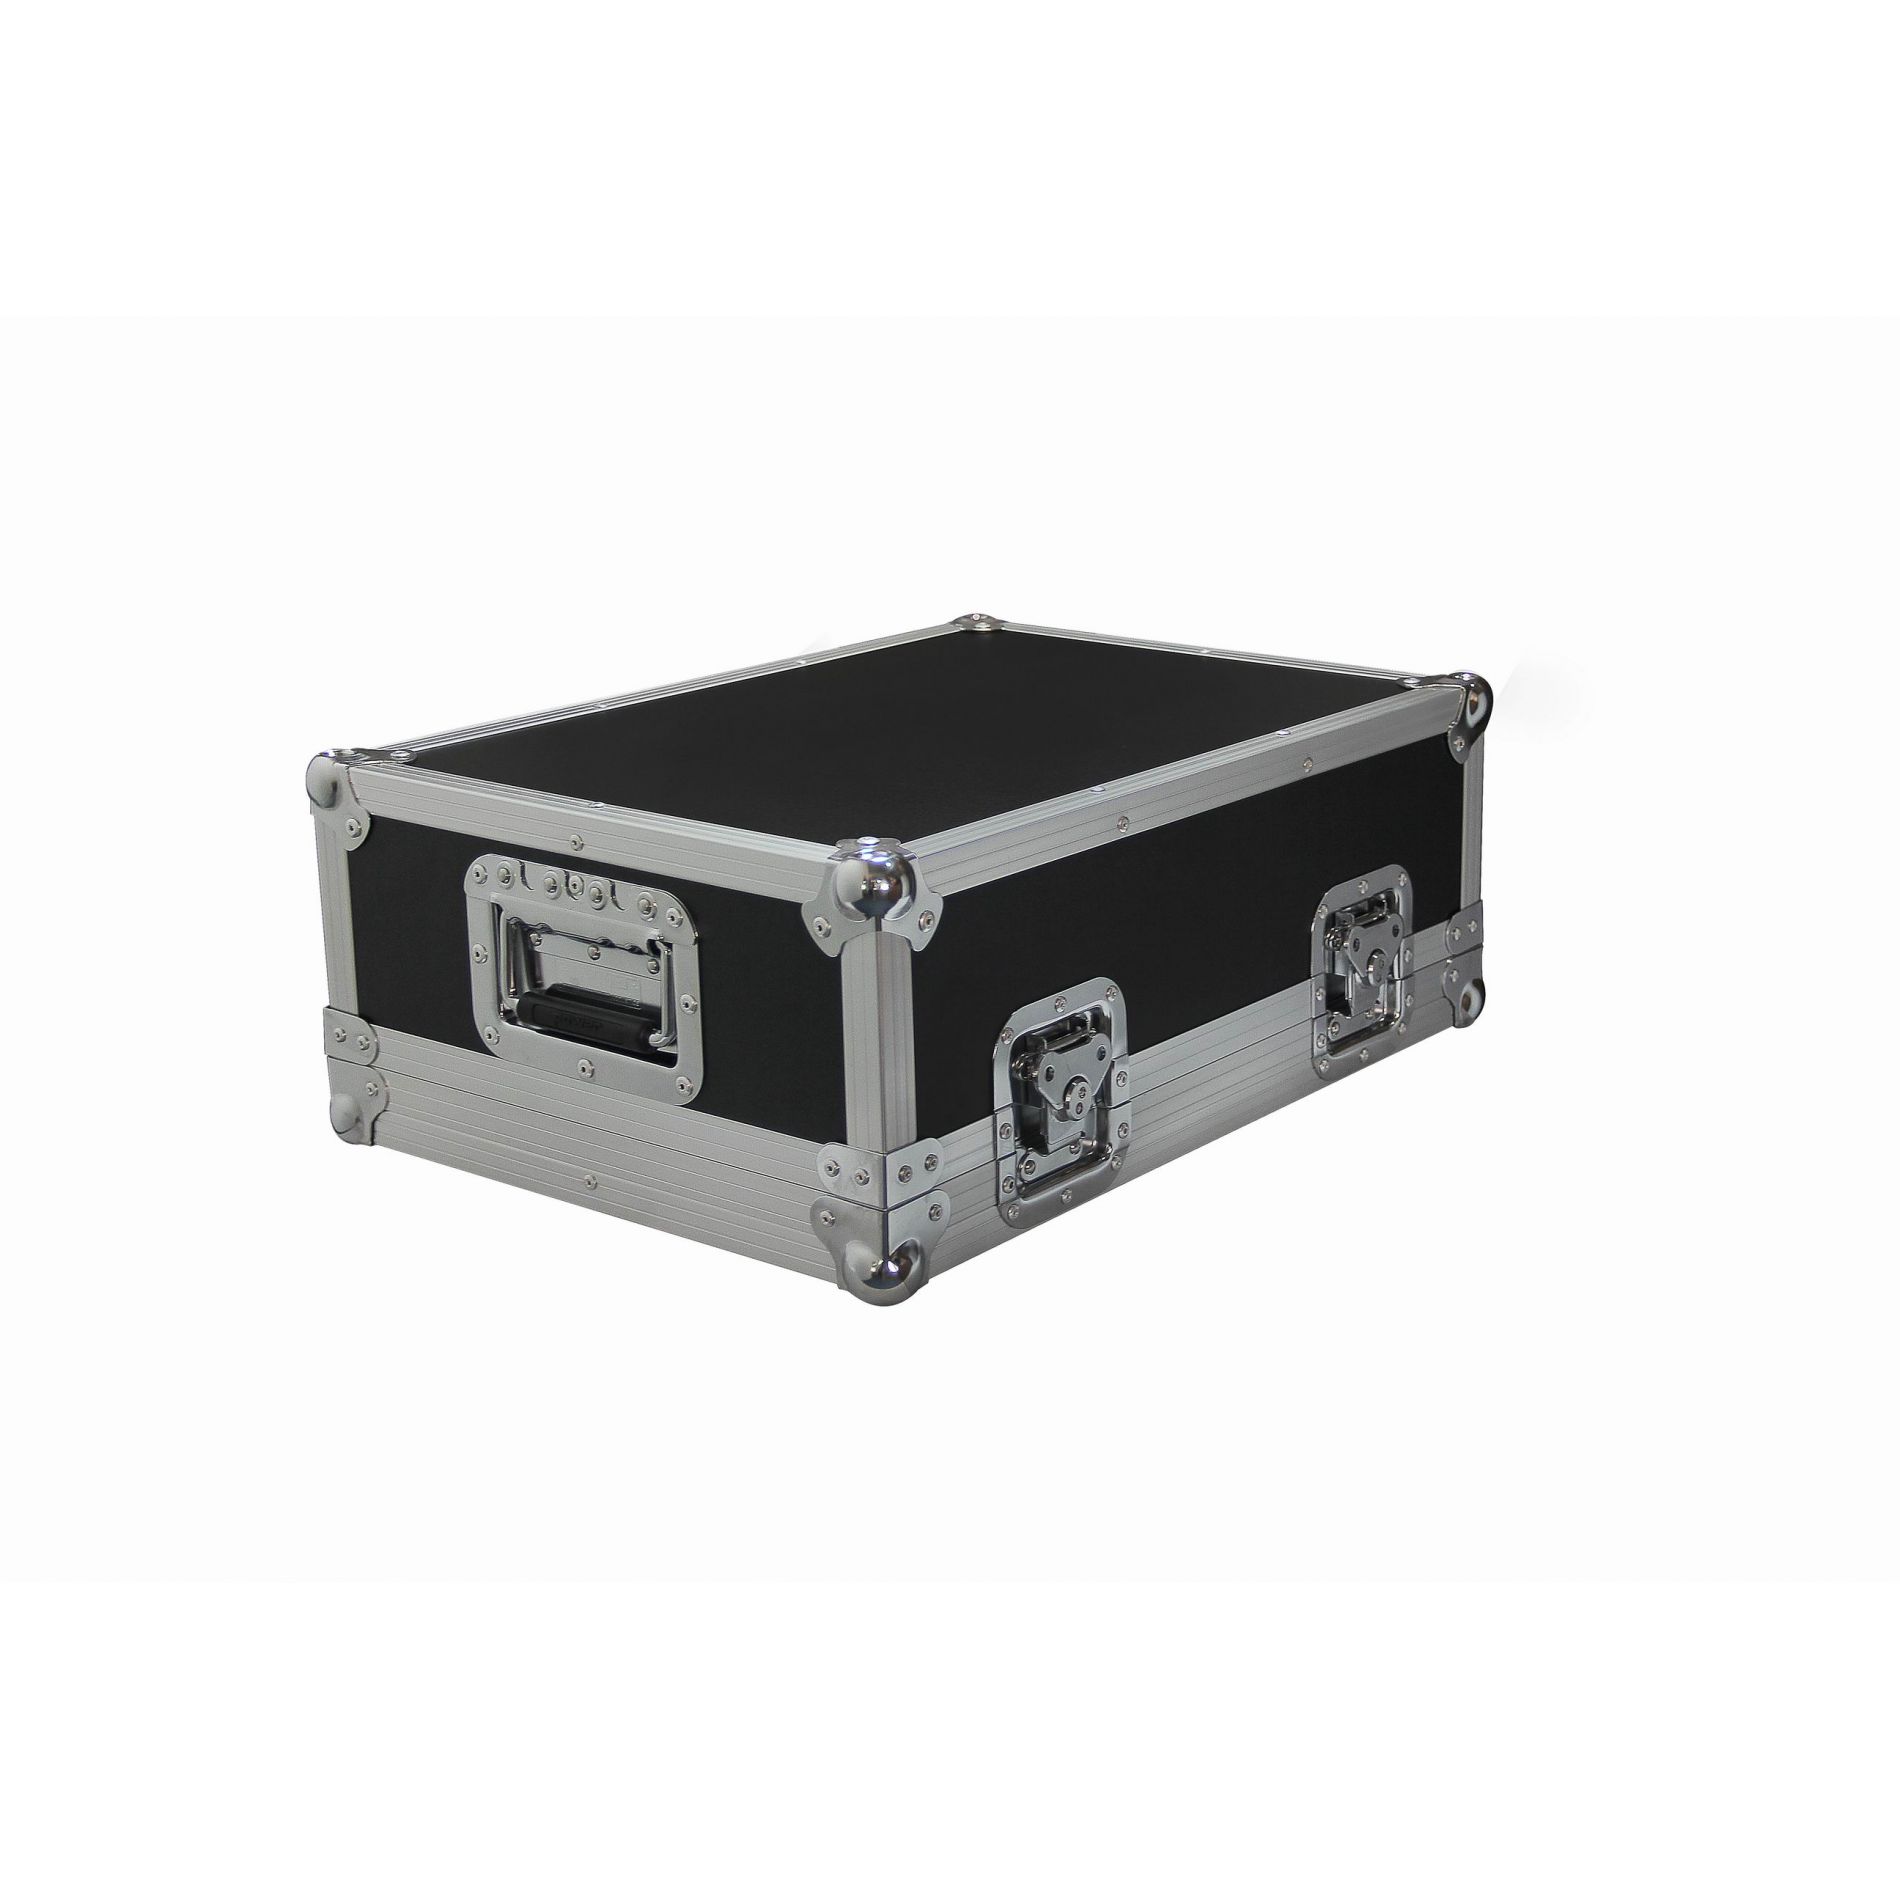 Power Acoustics Flight Case Pour Mixer - Xxs - Cases for mixing desk - Variation 2